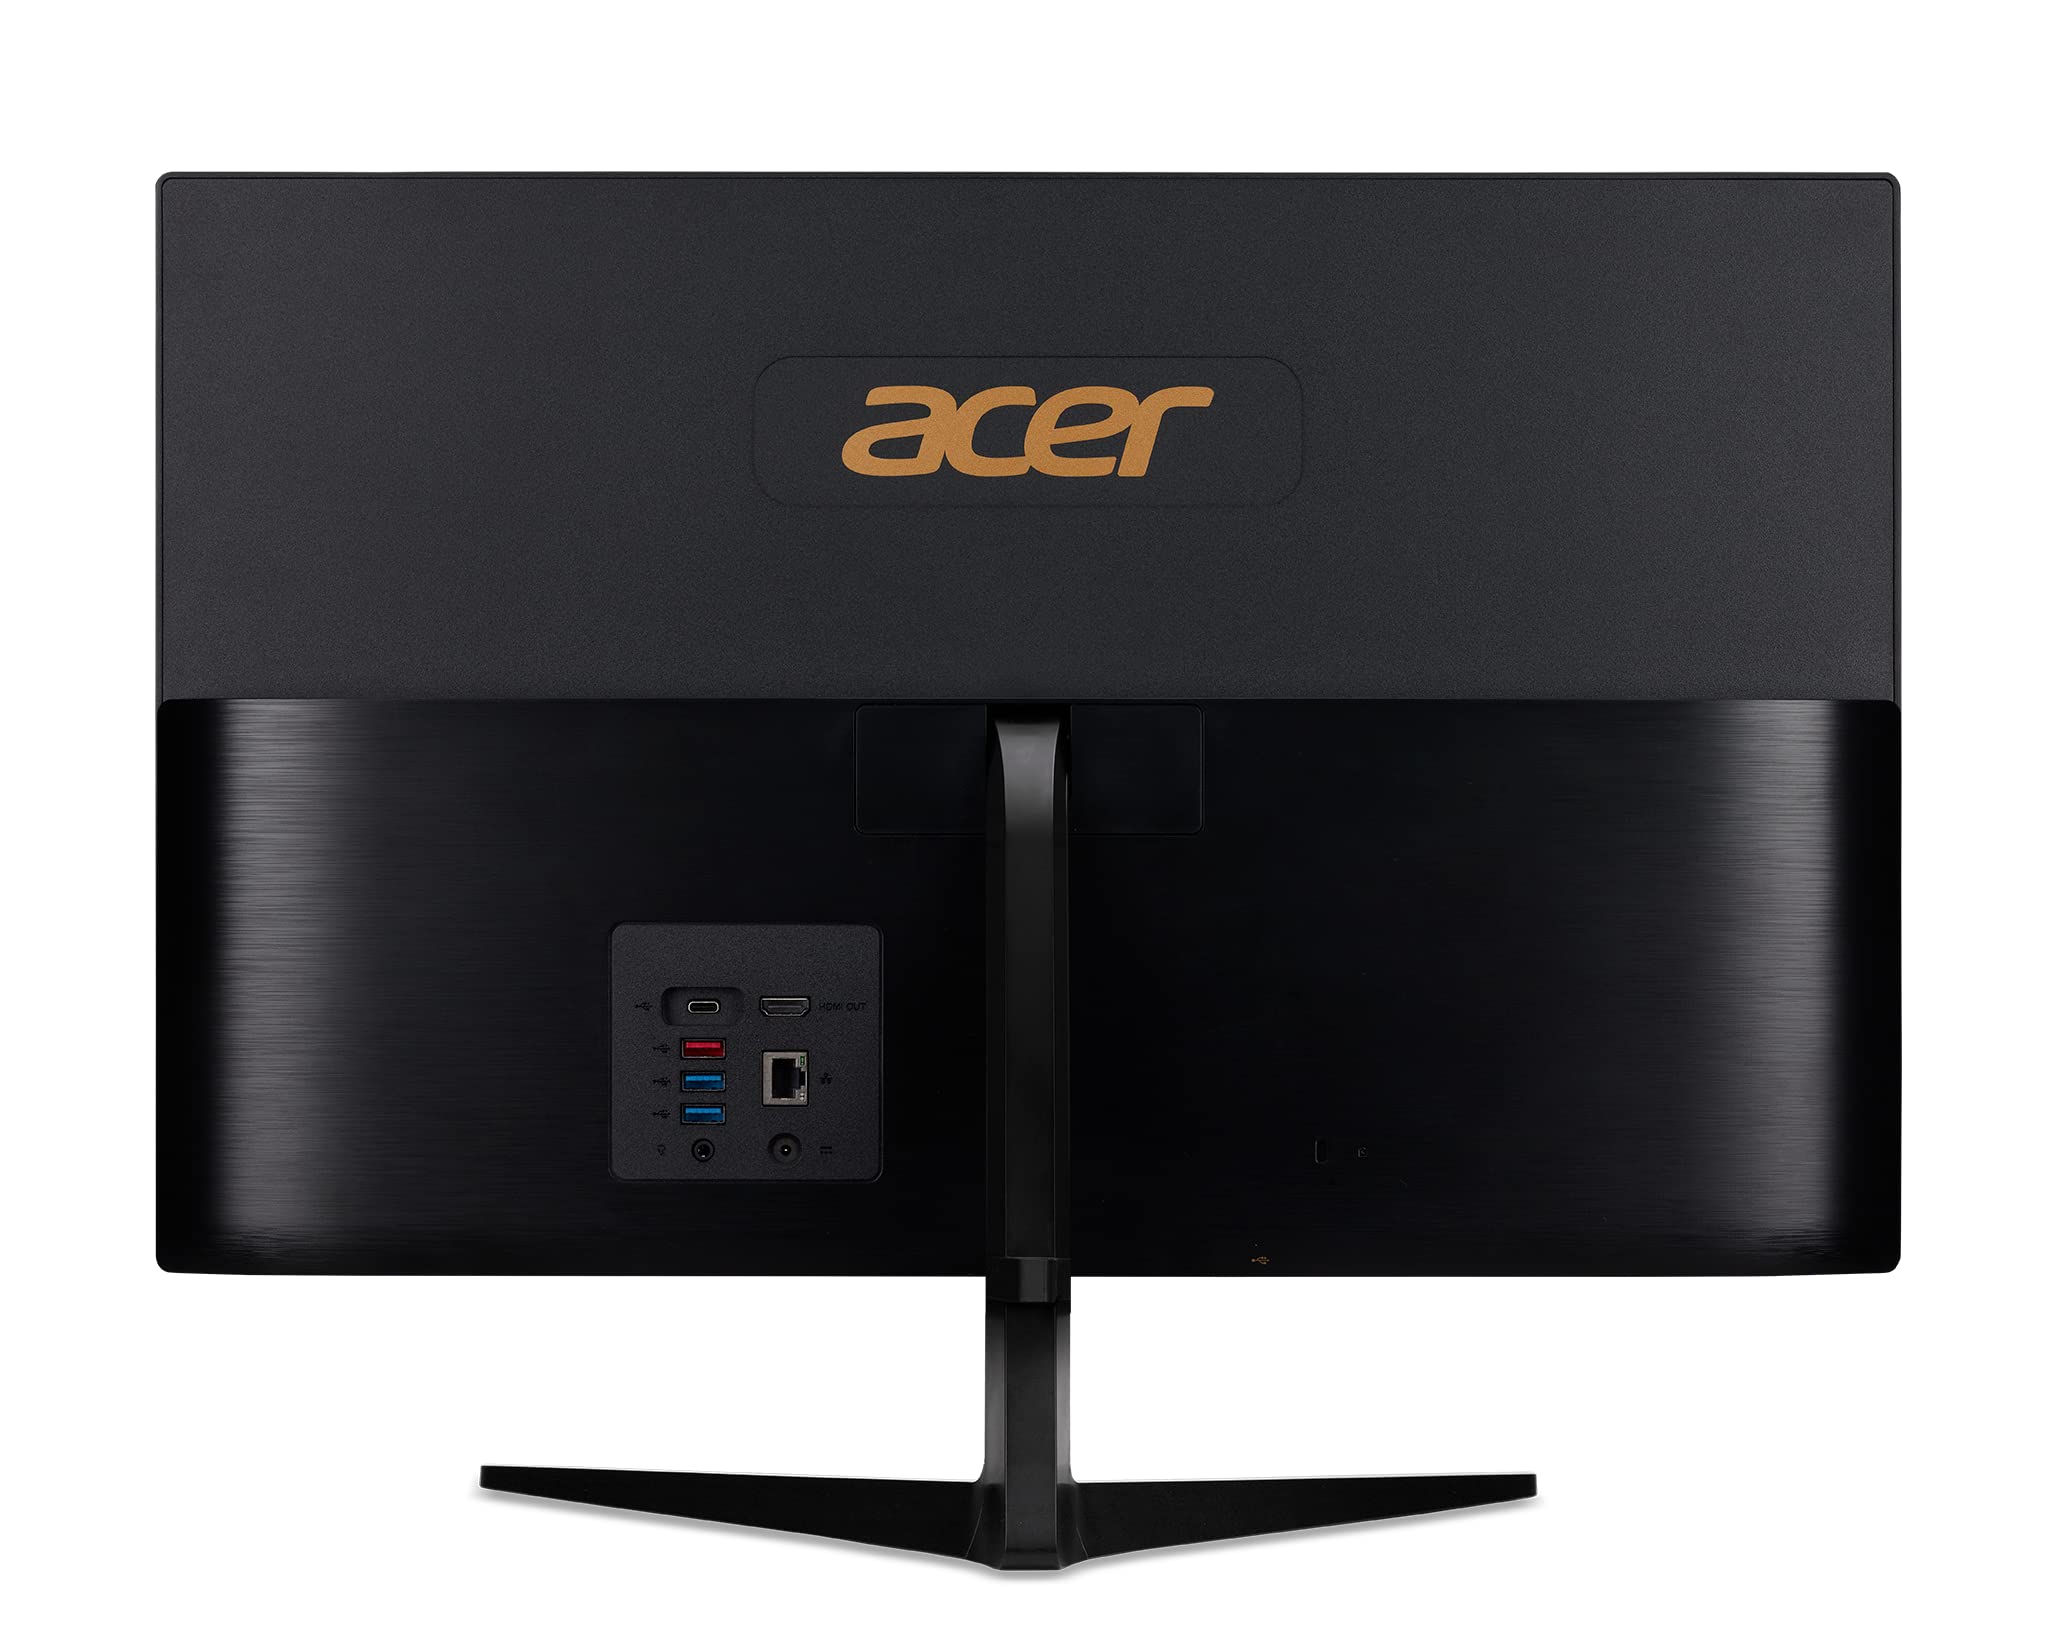 Acer Aspire C24-1700-UR12 AIO Desktop | 23.8